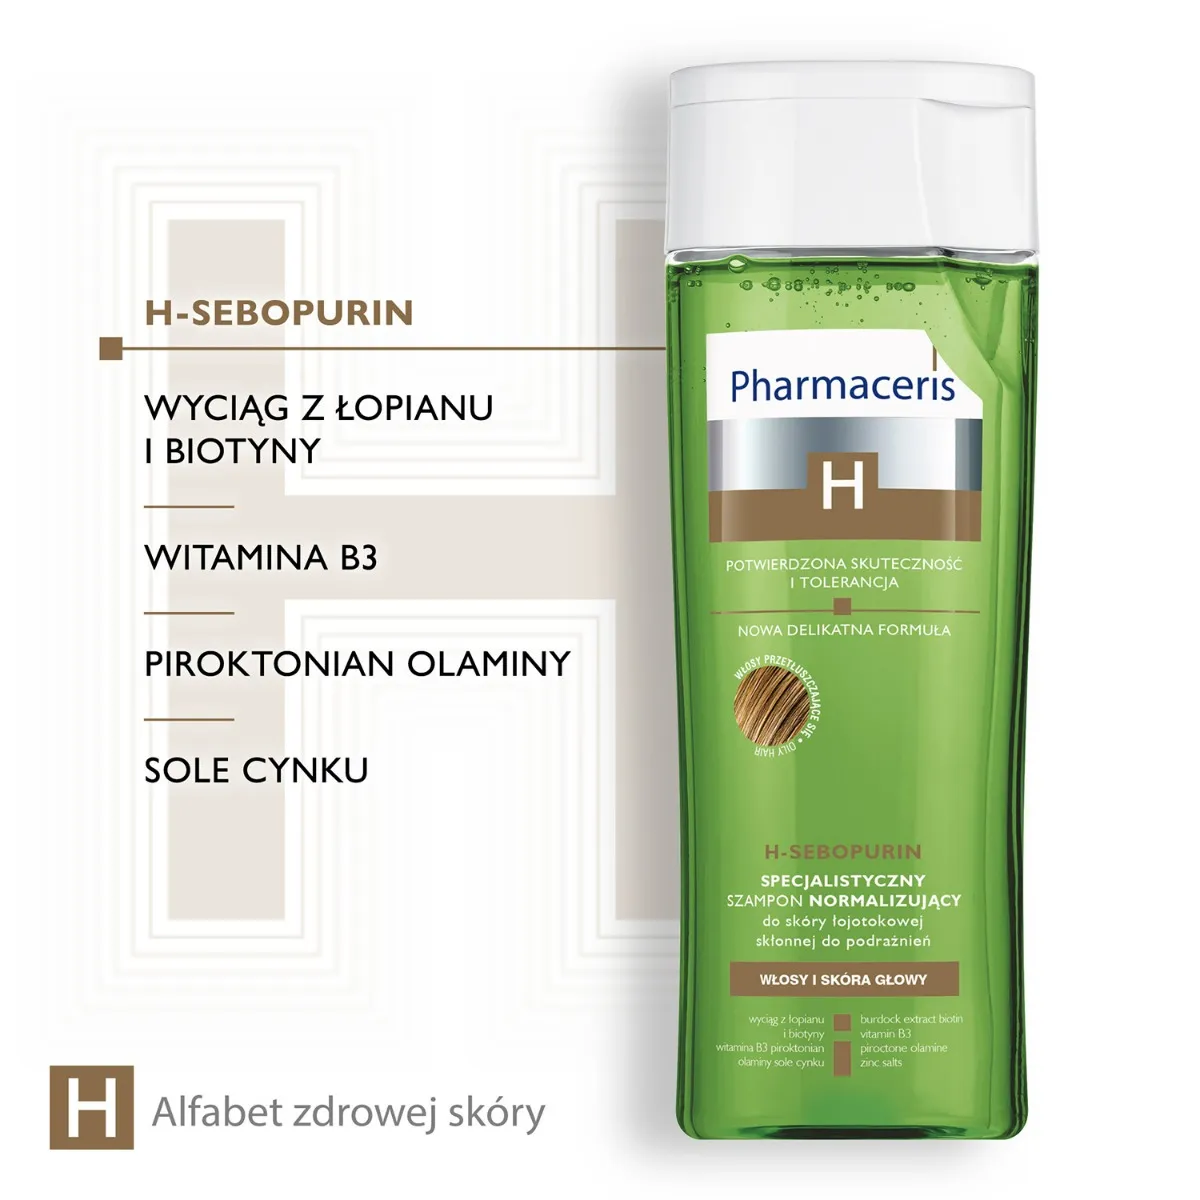 Pharmaceris H-Sebopurin, specjalistyczny szampon do włosów, 250 ml 